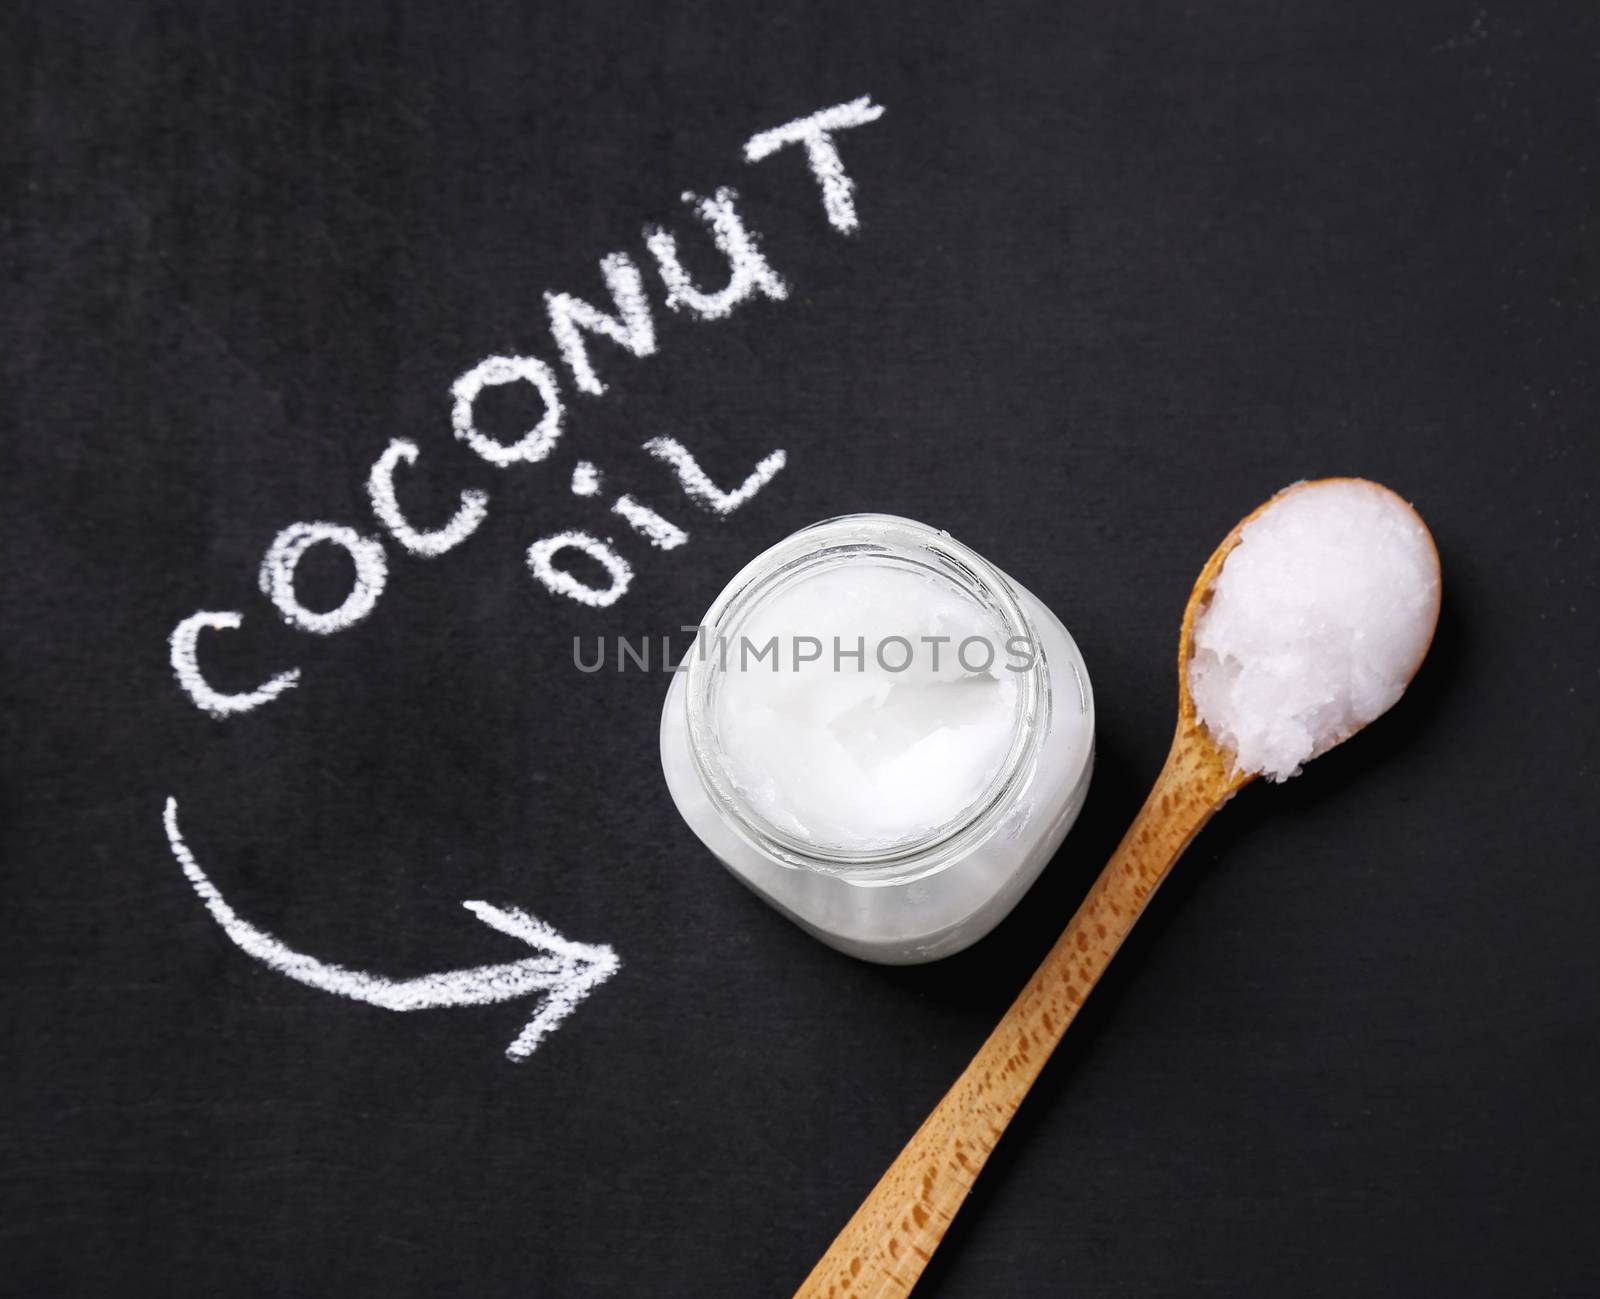 Coconut oil by rufatjumali